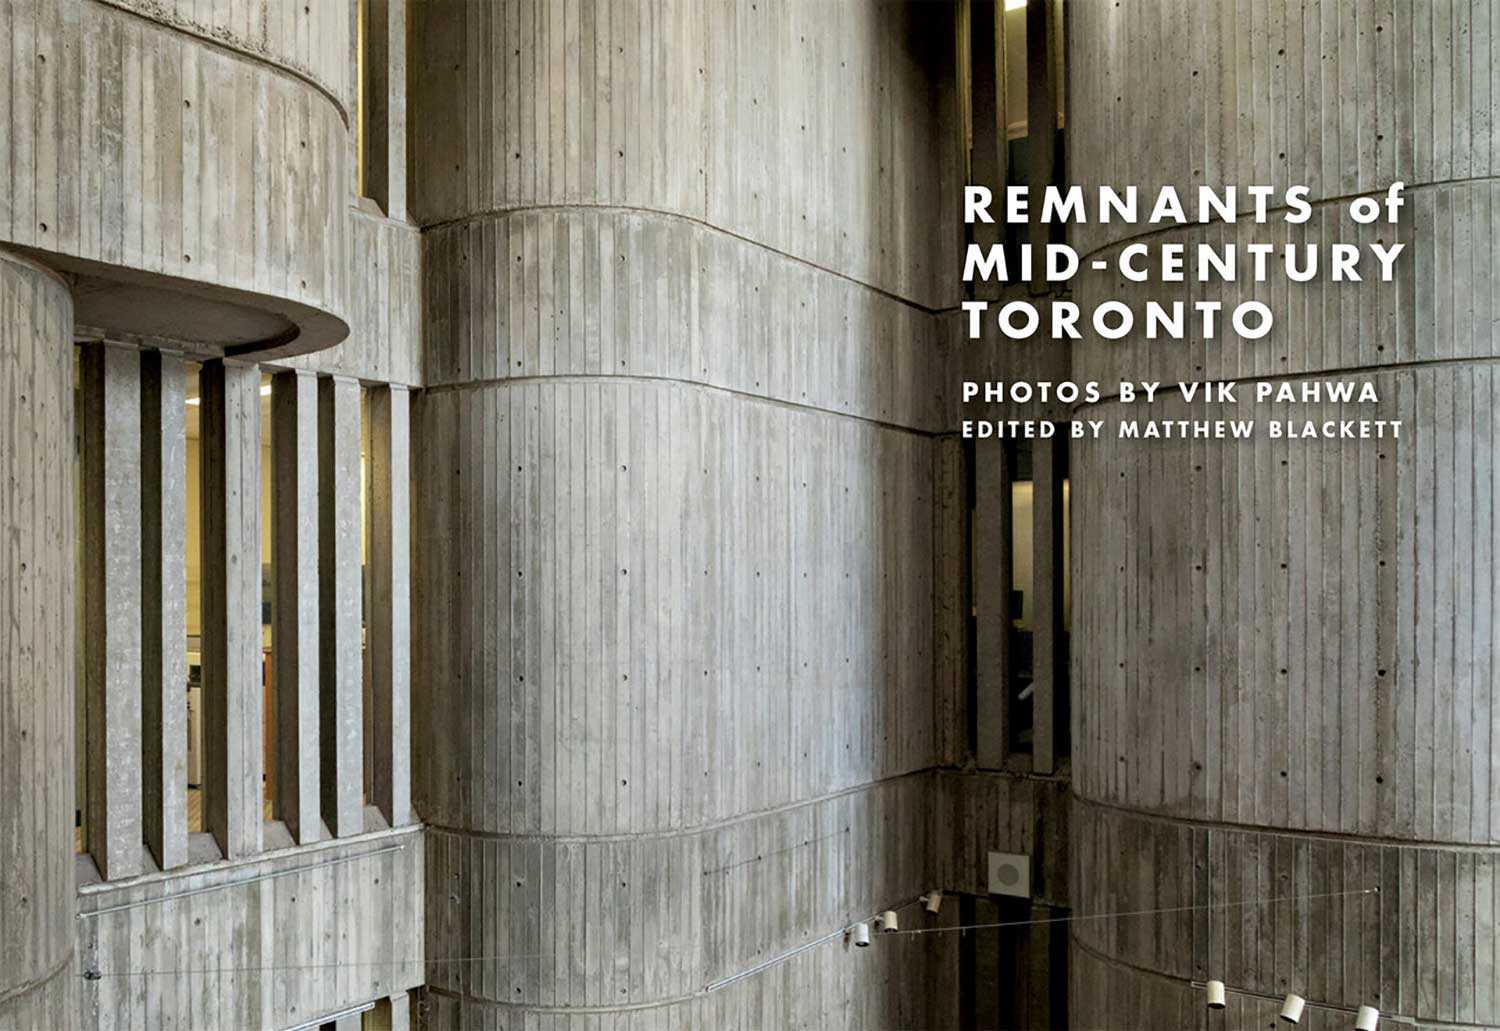 « The Remnants of Mid-Century Toronto » (Les vestiges du Toronto du milieu du siècle), un livre photo de Spacing et Vik Pahwa